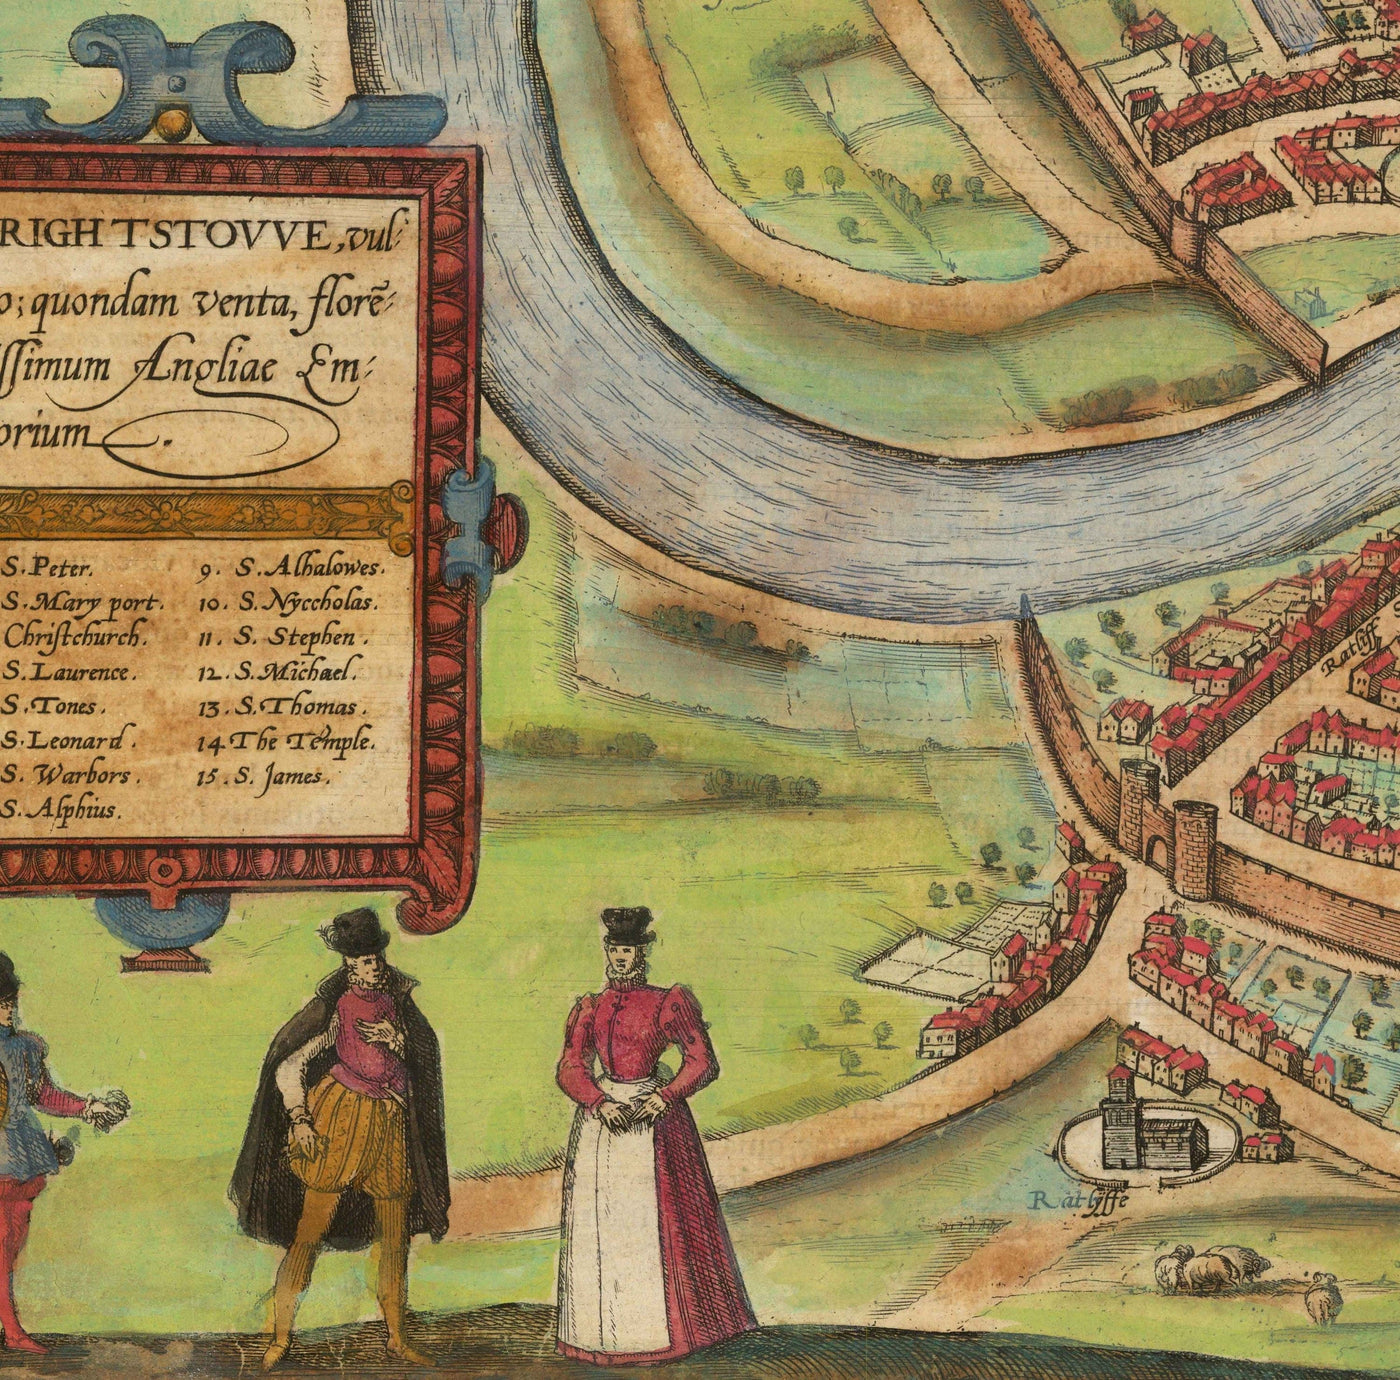 Alte Karte von Bristol, 1588 von Braun - Brightstowe, Avon, St. Nicholas, Newgate, Wappen